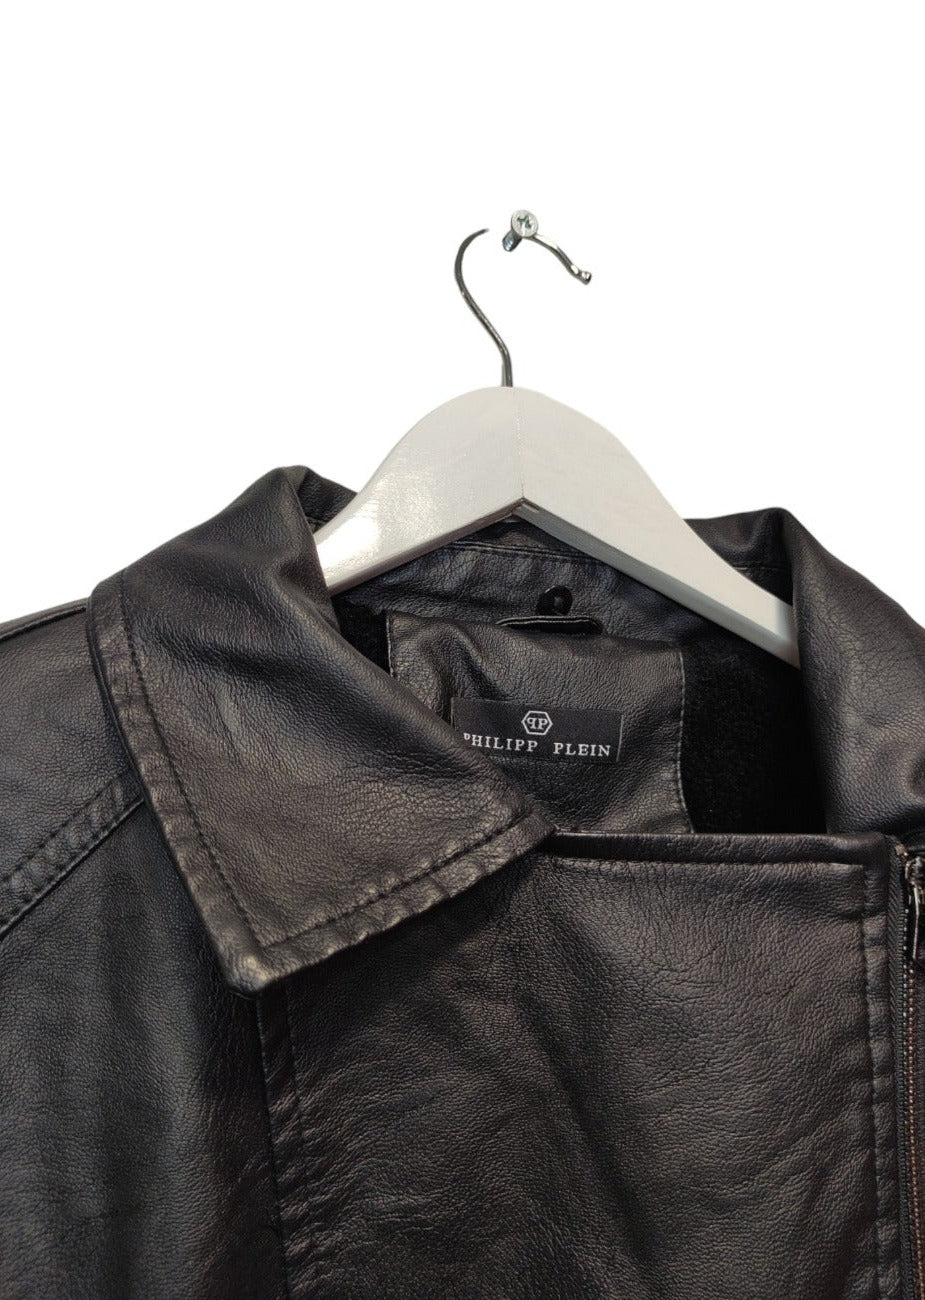 Premium Branded, Γυναικείο, Ενισχυμένο Μπουφάν Δερματίνης σε Μαύρο χρώμα (Medium)